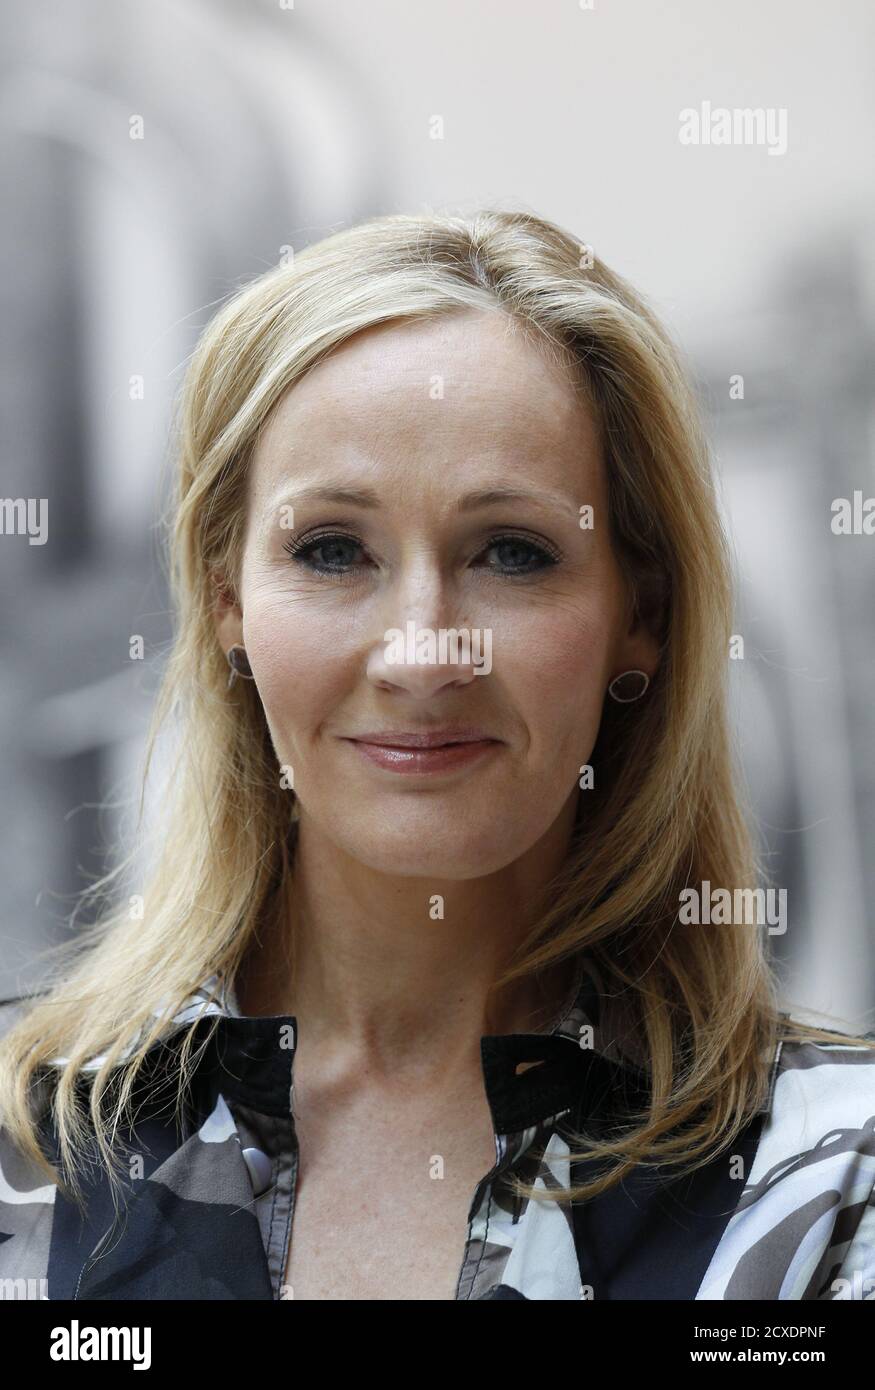 Der britische Schriftsteller JK Rowling, Autor der Harry Potter Buchreihe,  posiert während der Einführung der neuen Online-Website Pottermore in  London am 23. Juni 2011. Die sieben Harry Potter-Romane werden im Oktober in